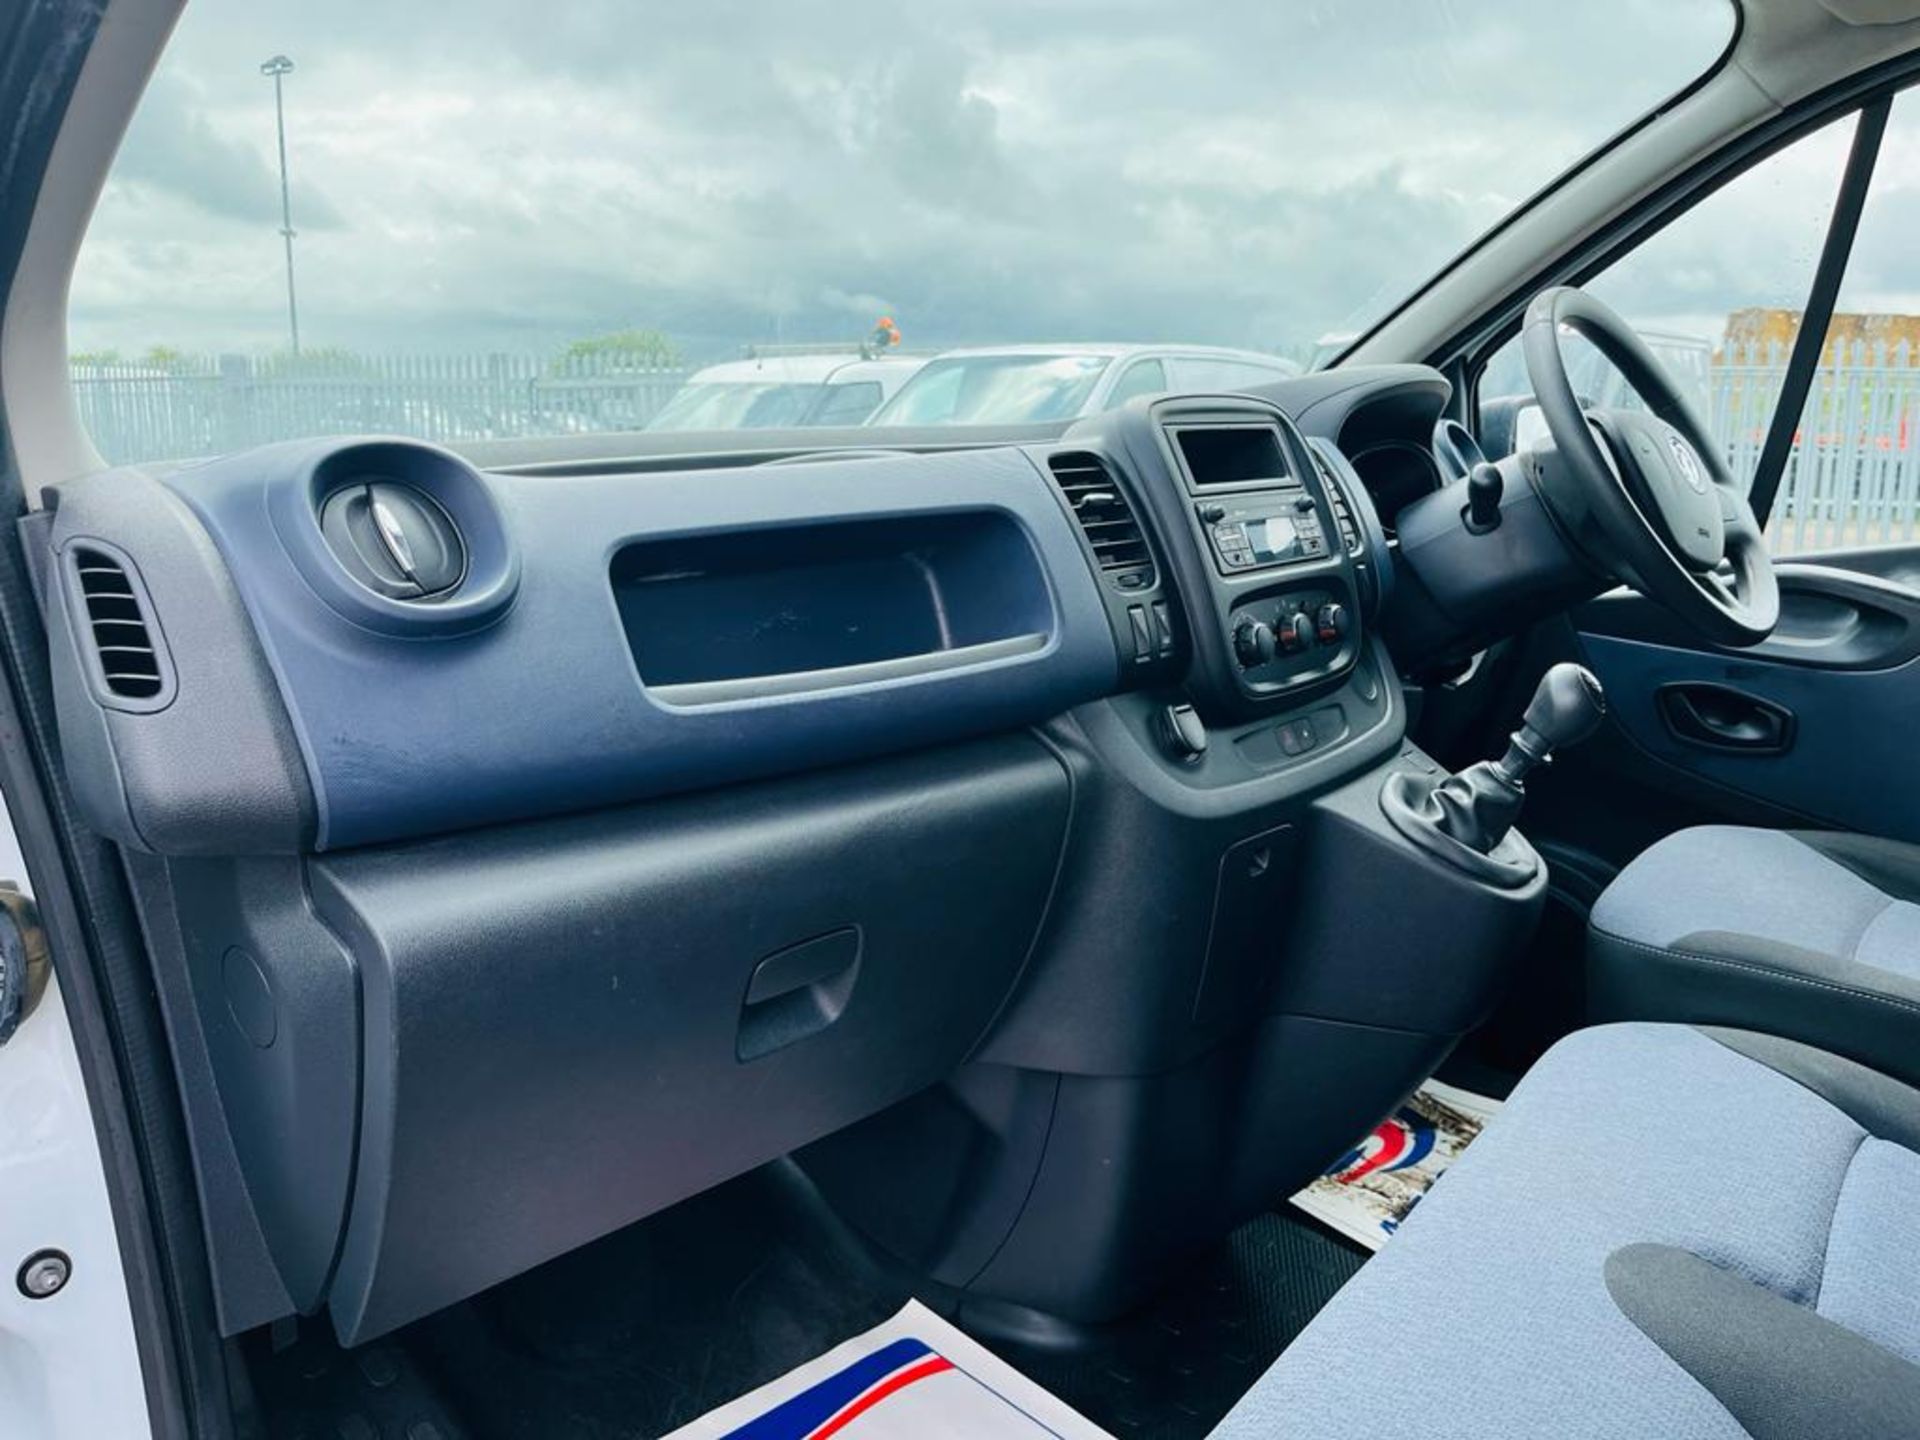 ** ON SALE ** Vauxhall Vivaro 1.6 CDTI 120 LWB 2.9T 2016 '66 Reg" - Panel Van - ULEZ Compliant - Image 22 of 24